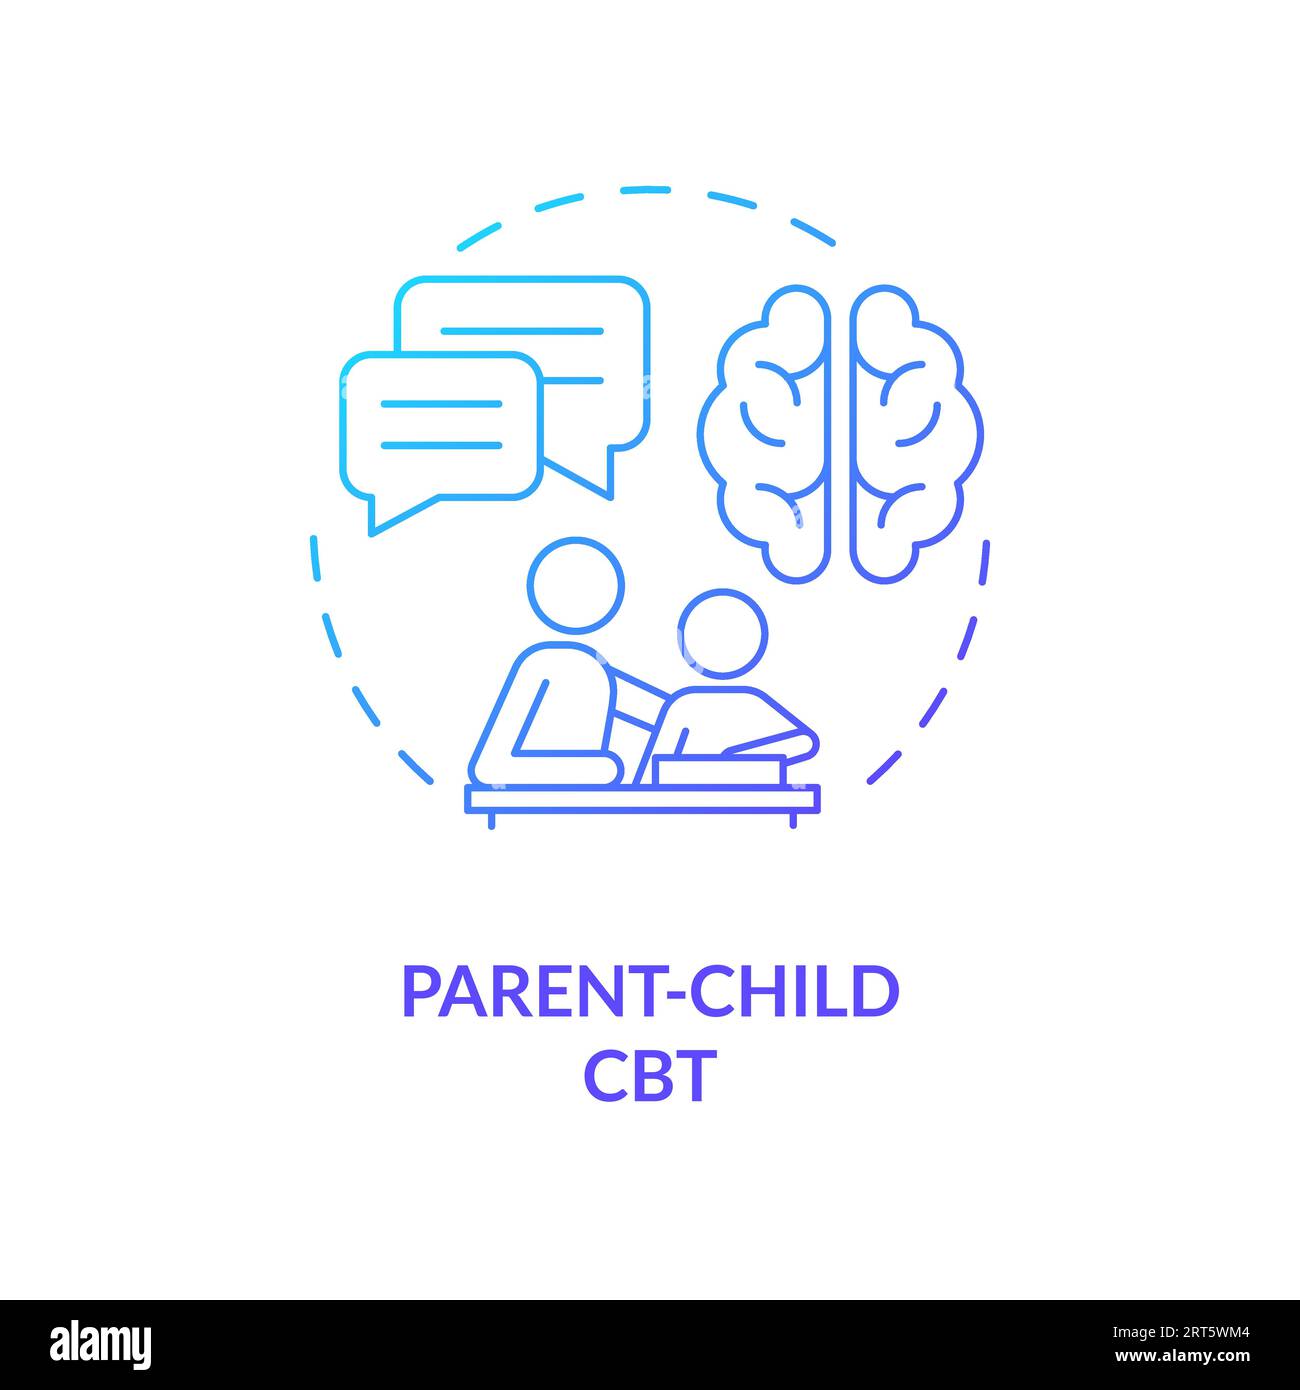 Konzept des Symbols für die CBT-Verlaufslinie des übergeordneten 2D-Kindes Stock Vektor